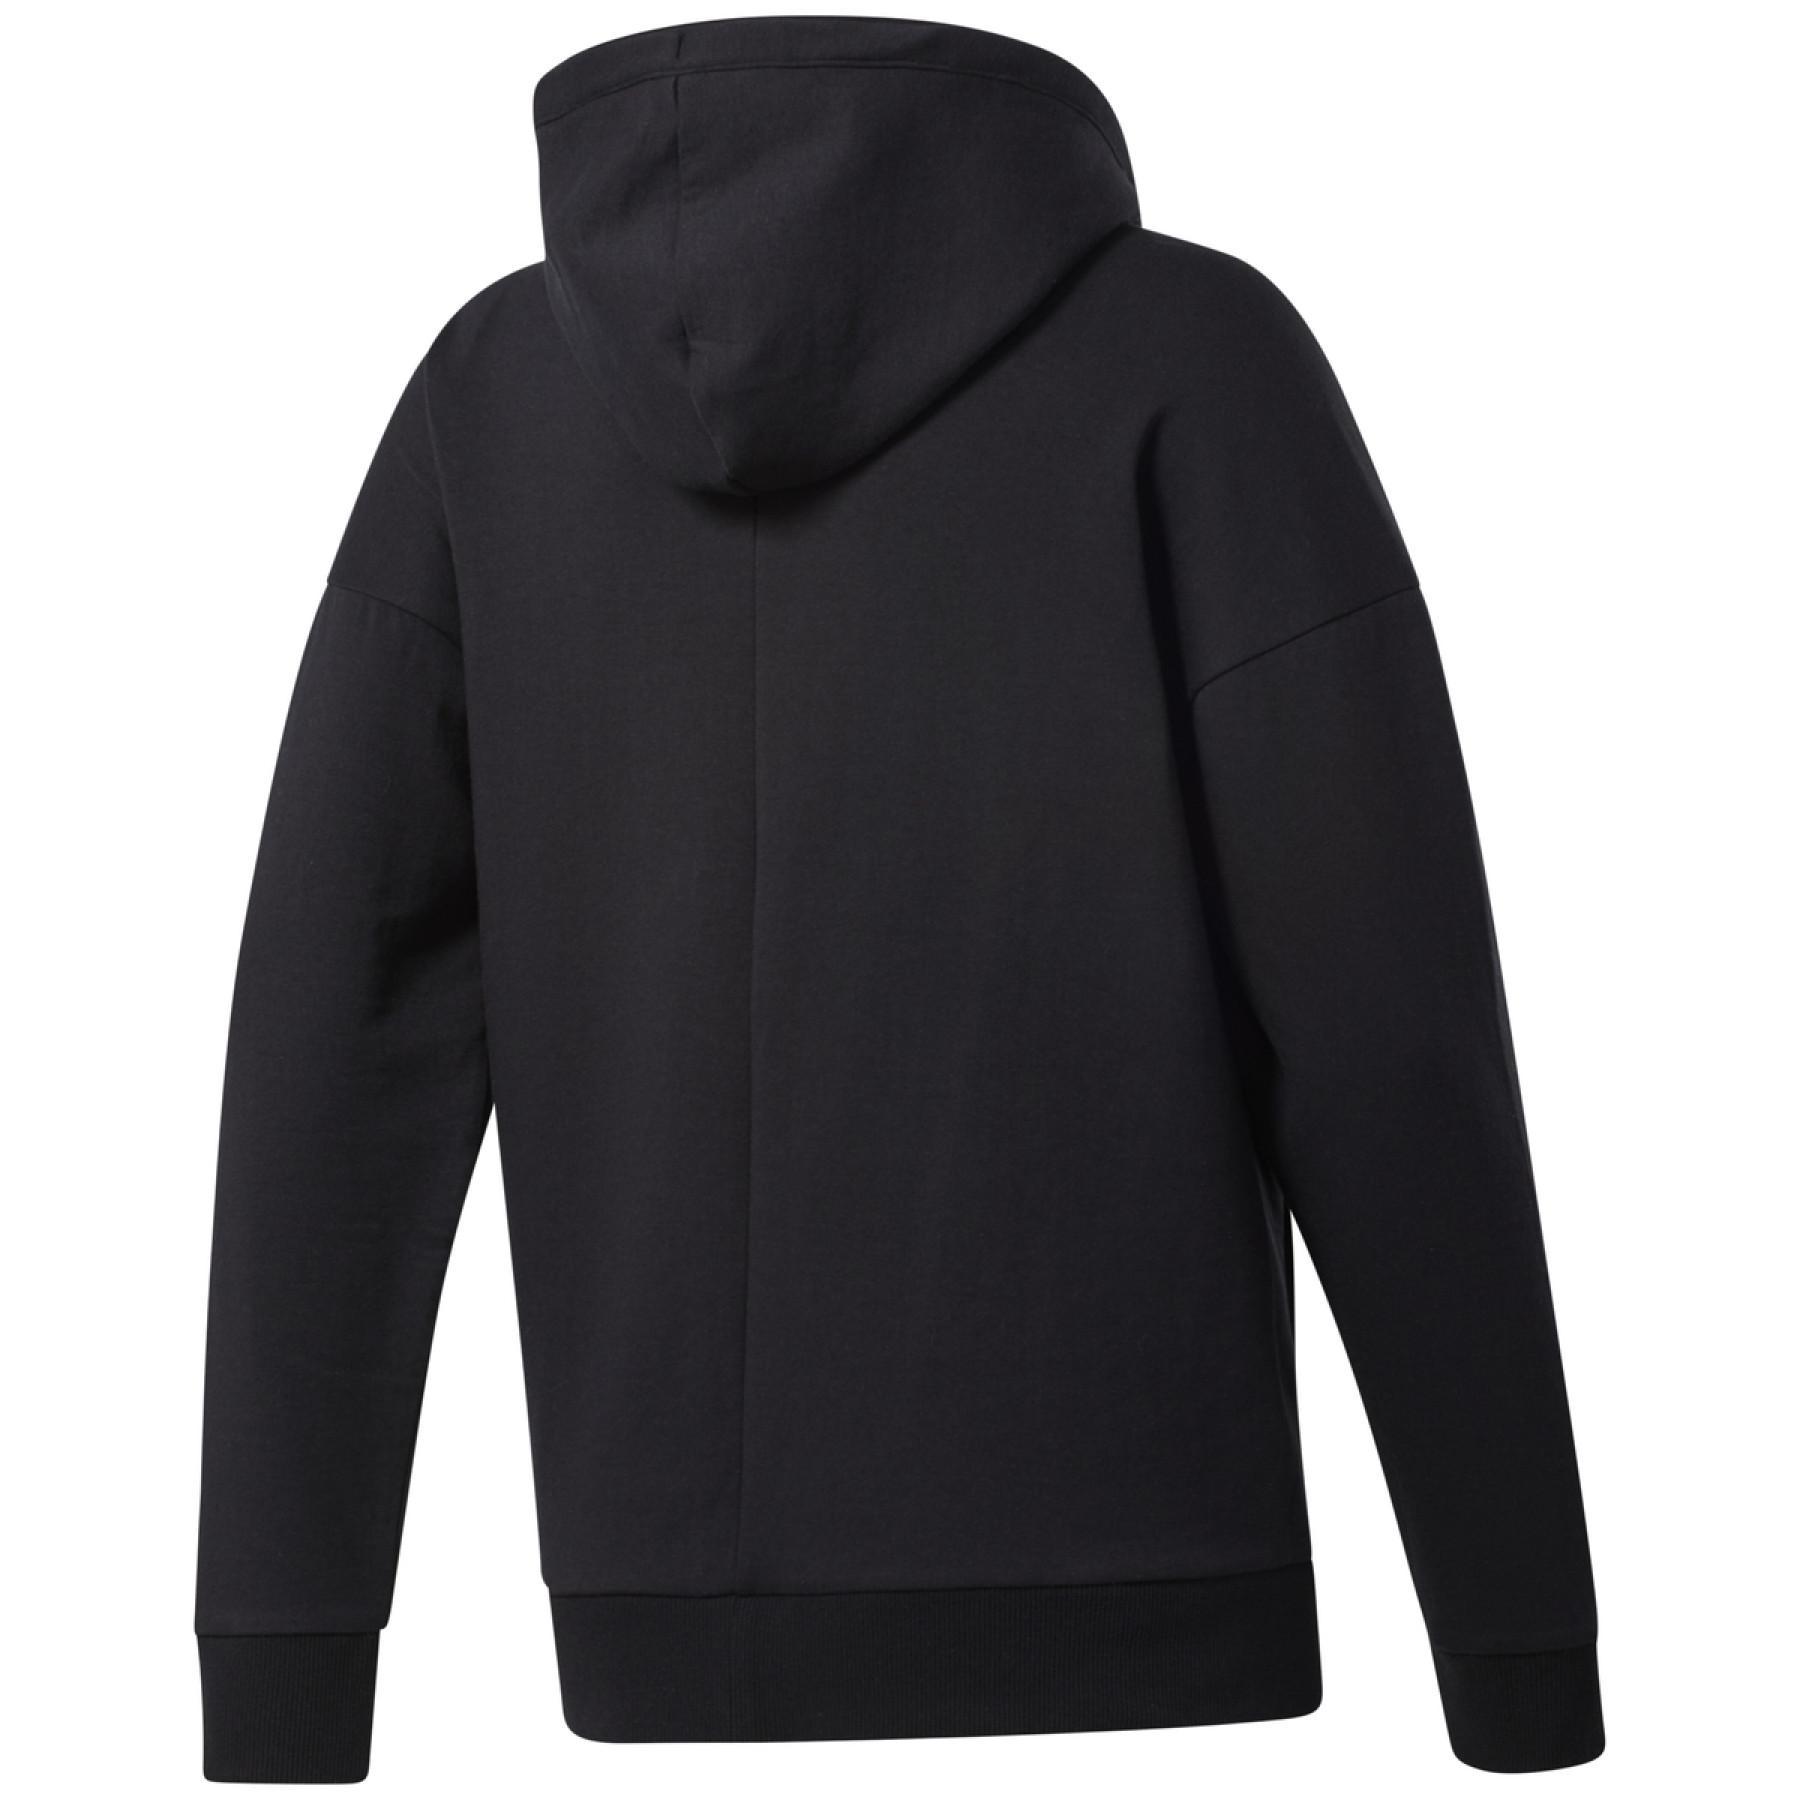 Women's hooded sweatshirt Reebok DreamBlend Cotton Zip-Up